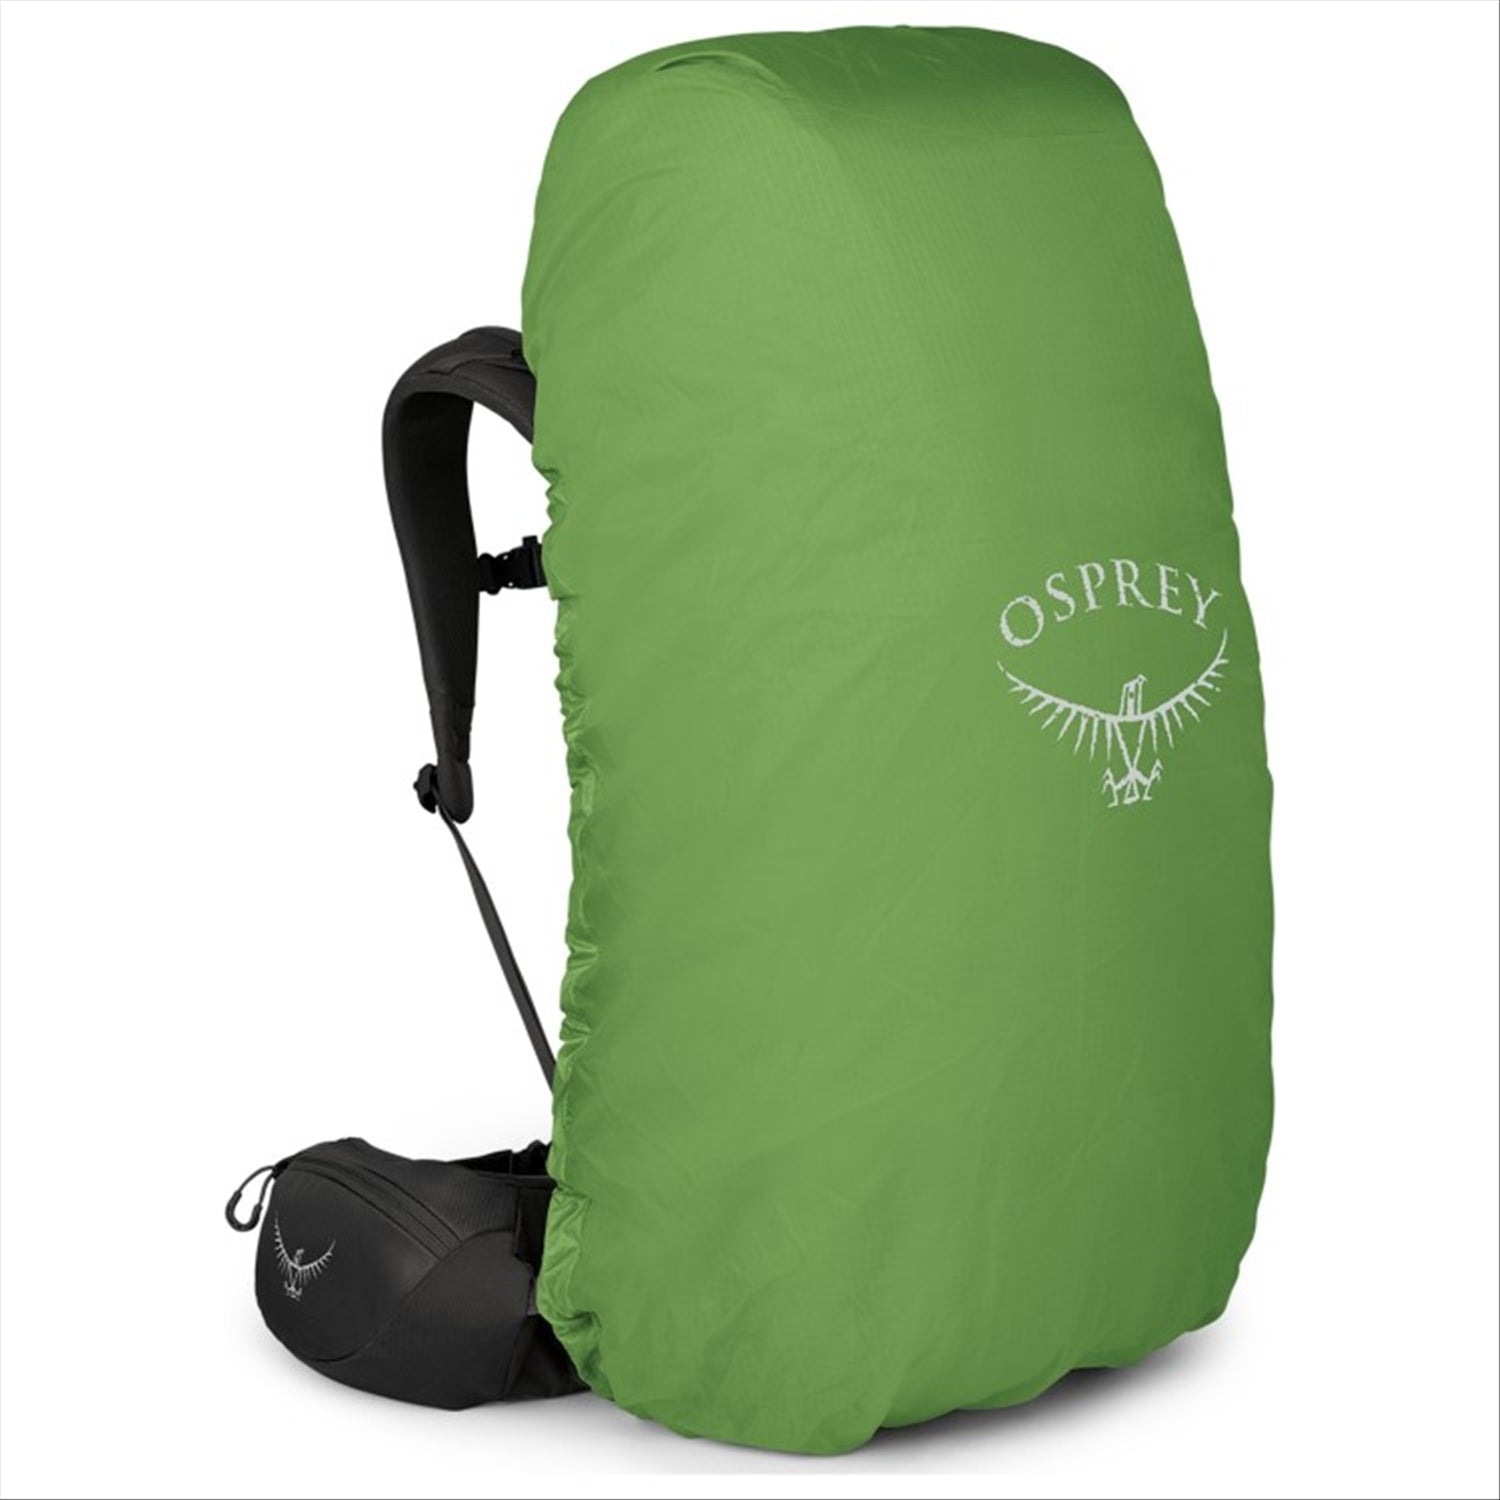 Osprey Volt 65 EF Extended Fit Back Pack